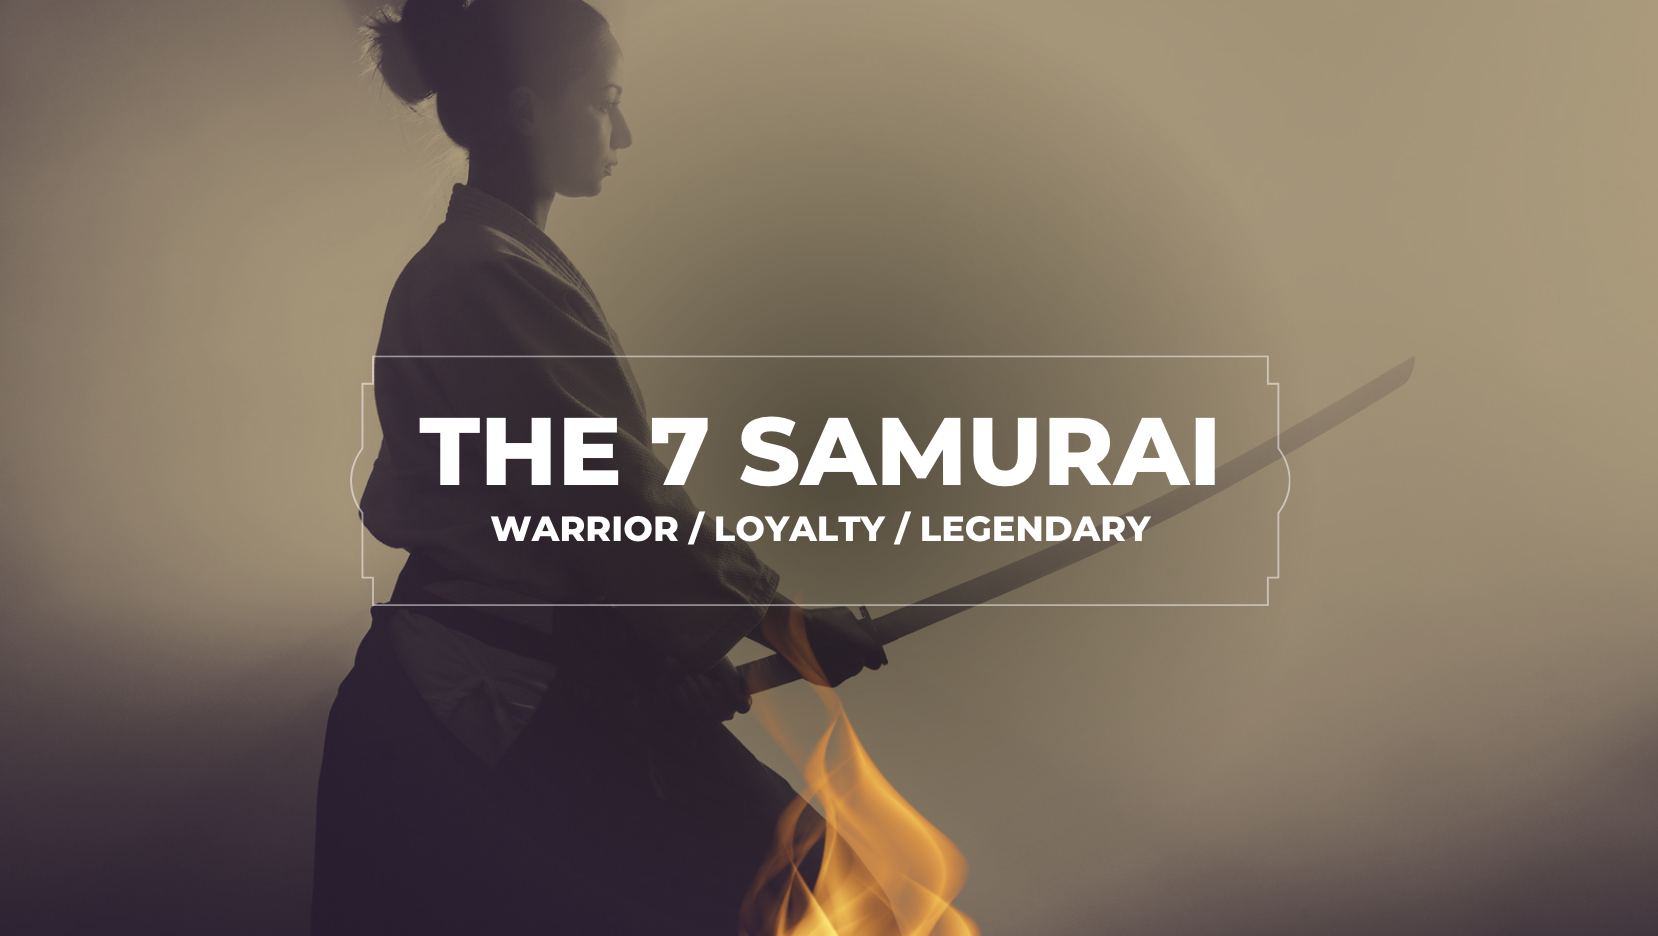 The 7 Samurai